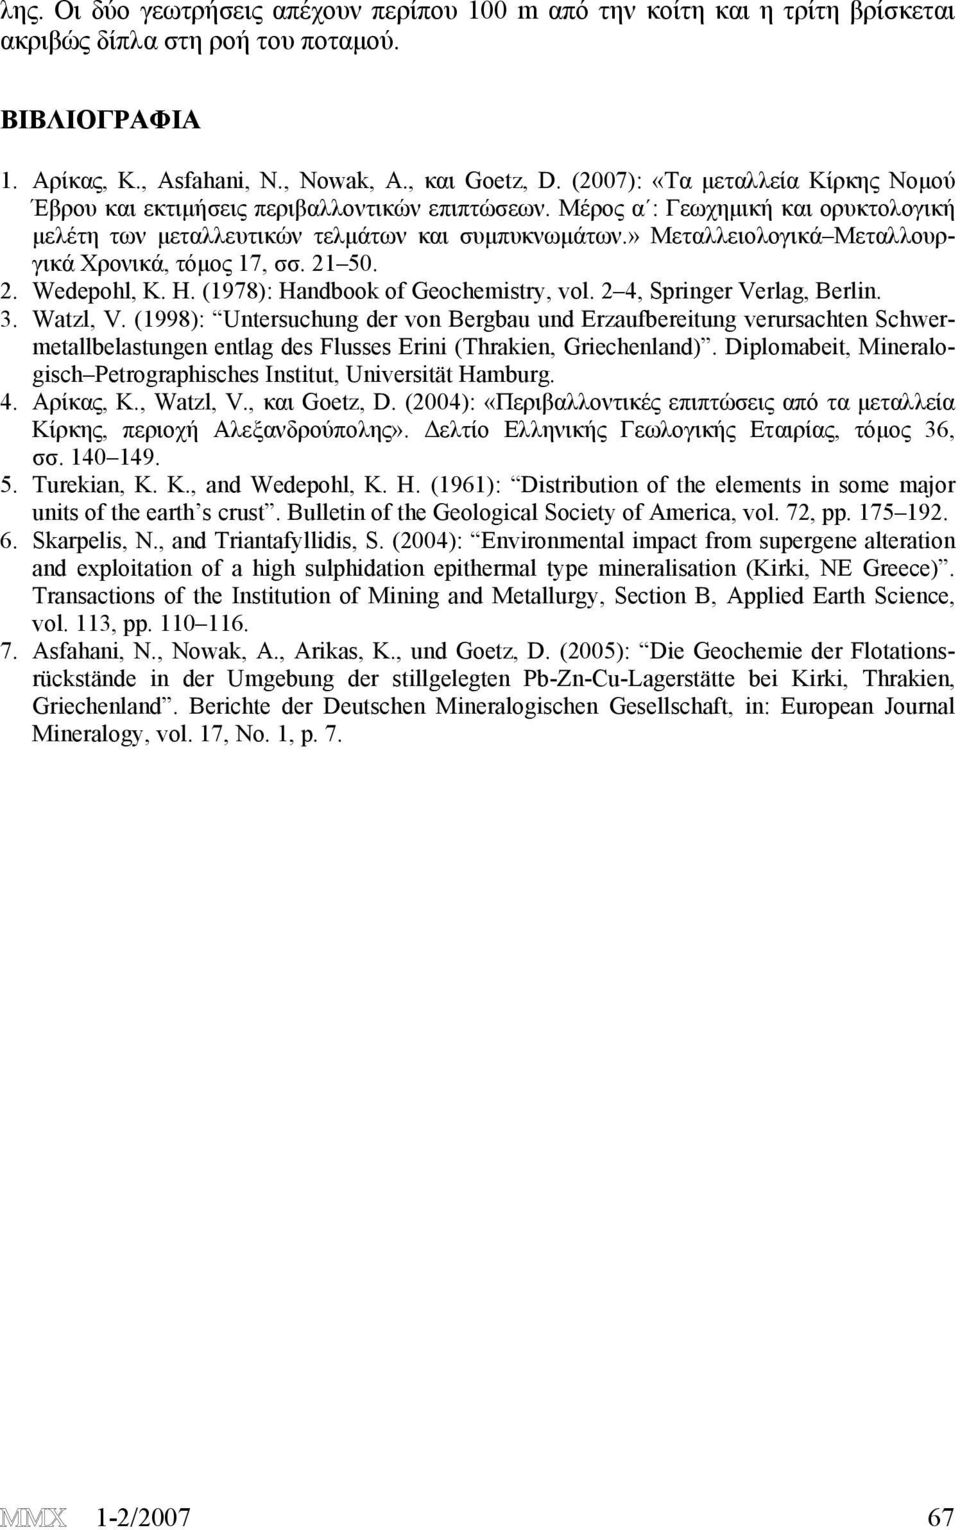 » Μεταλλειολογικά Μεταλλουργικά Χρονικά, τόμος 17, σσ. 21 50. 2. Wedepohl, K. H. (1978): Handbook of Geochemistry, vol. 2 4, Springer Verlag, Berlin. 3. Watzl, V.